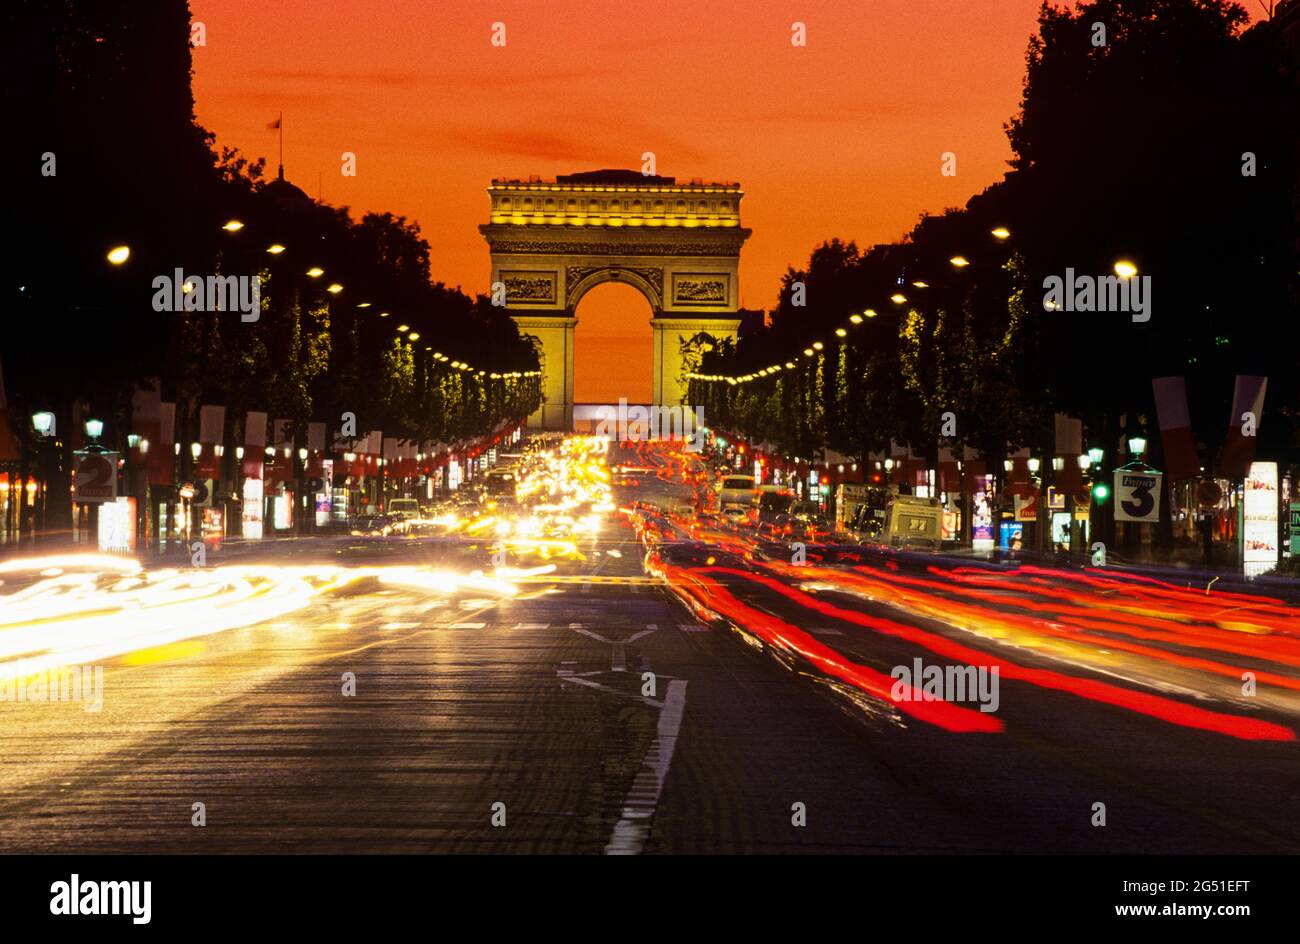 Arc de Triomphe de nuit, avenue des champs-Élysées, Paris, France Banque D'Images